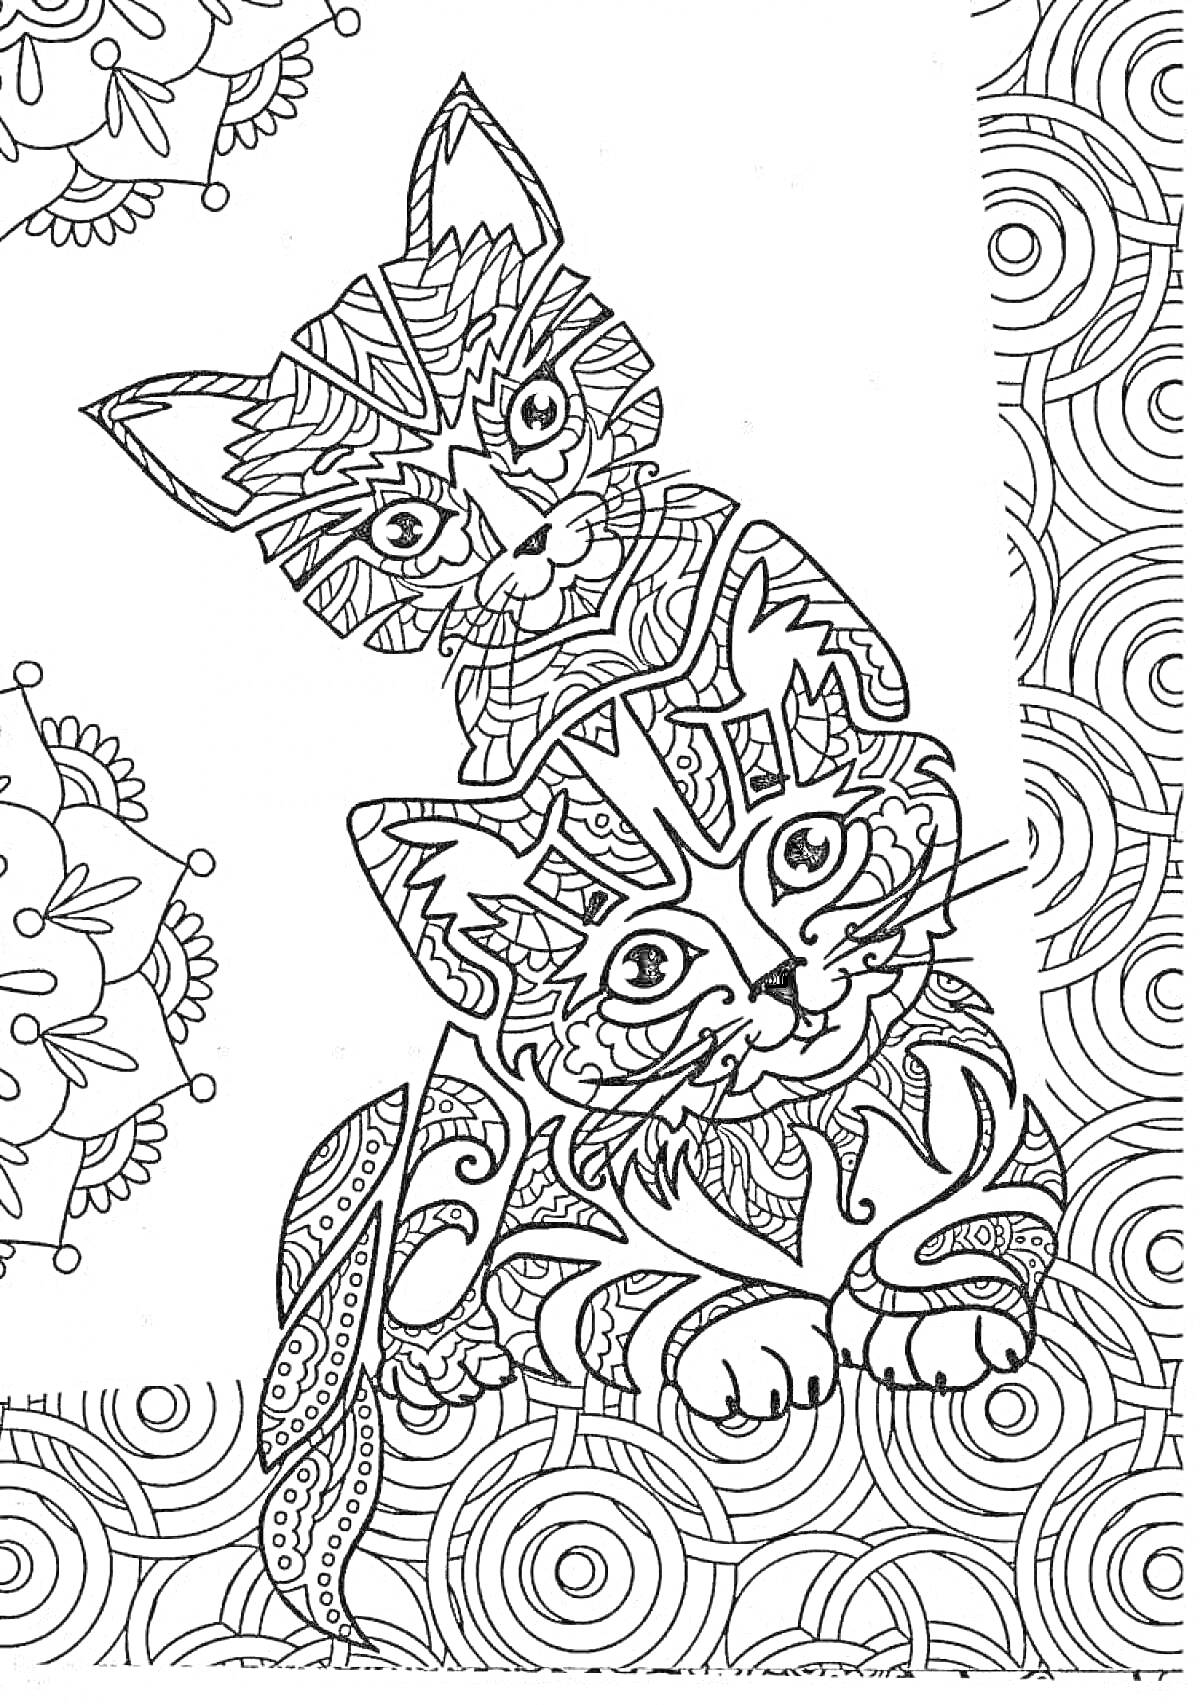 Раскраска антистресс раскраска с двумя котенками, окруженными узорами и орнаментами